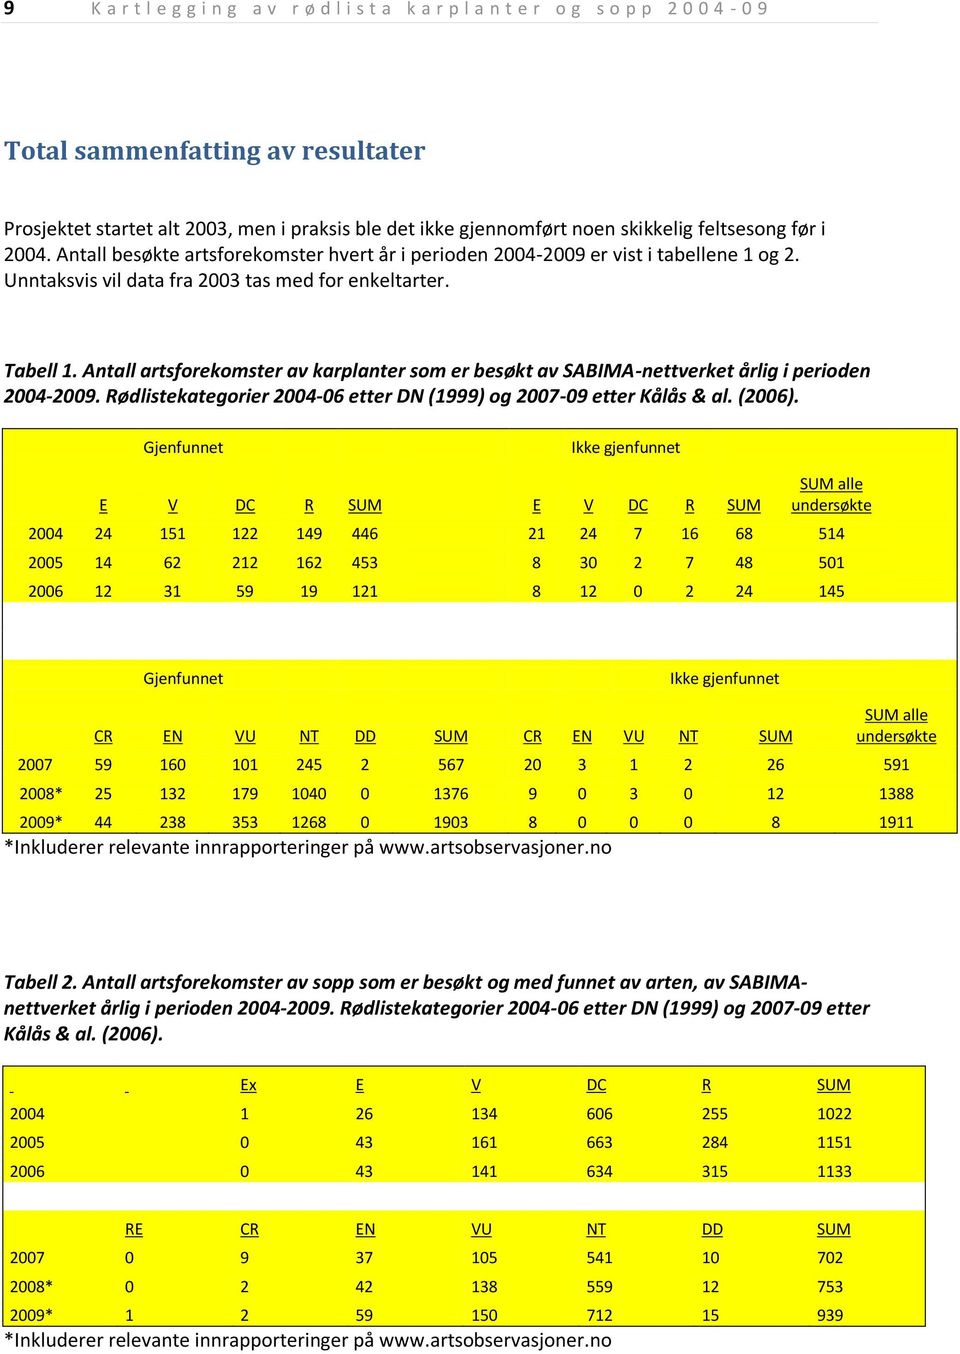 Antall artsforekomster av karplanter som er besøkt av SABIMA-nettverket årlig i perioden 2004-2009. Rødlistekategorier 2004-06 etter DN (1999) og 2007-09 etter Kålås & al. (2006).